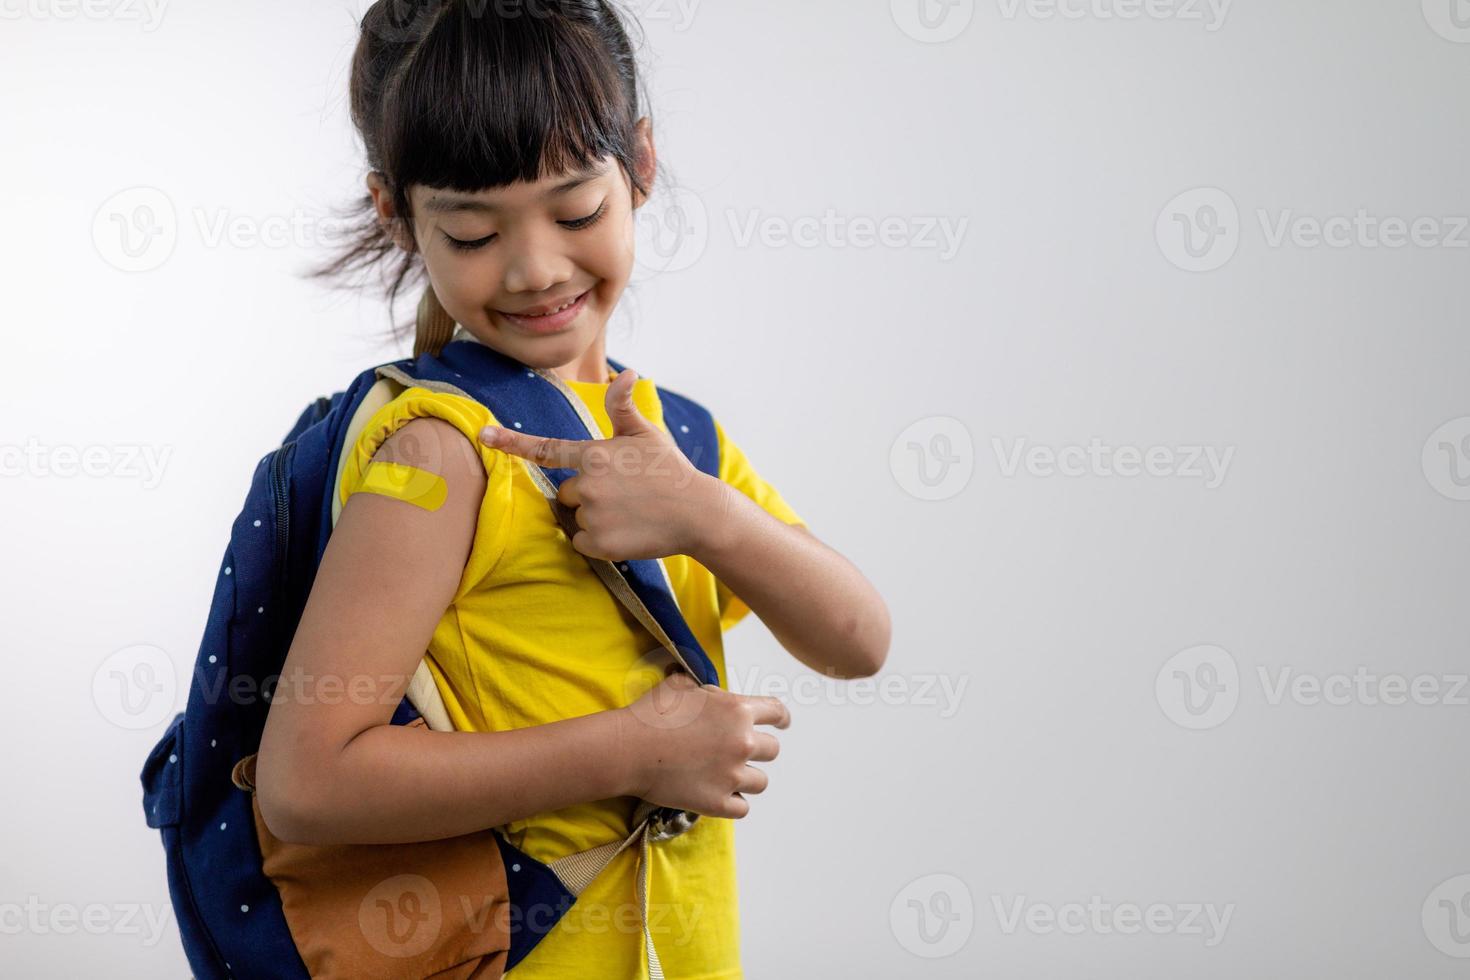 asiatisches junges mädchen, das ihren arm mit gelbem verband zeigt, nachdem es geimpft oder geimpft wurde, kinderimmunisierung, covid-delta-impfkonzept foto